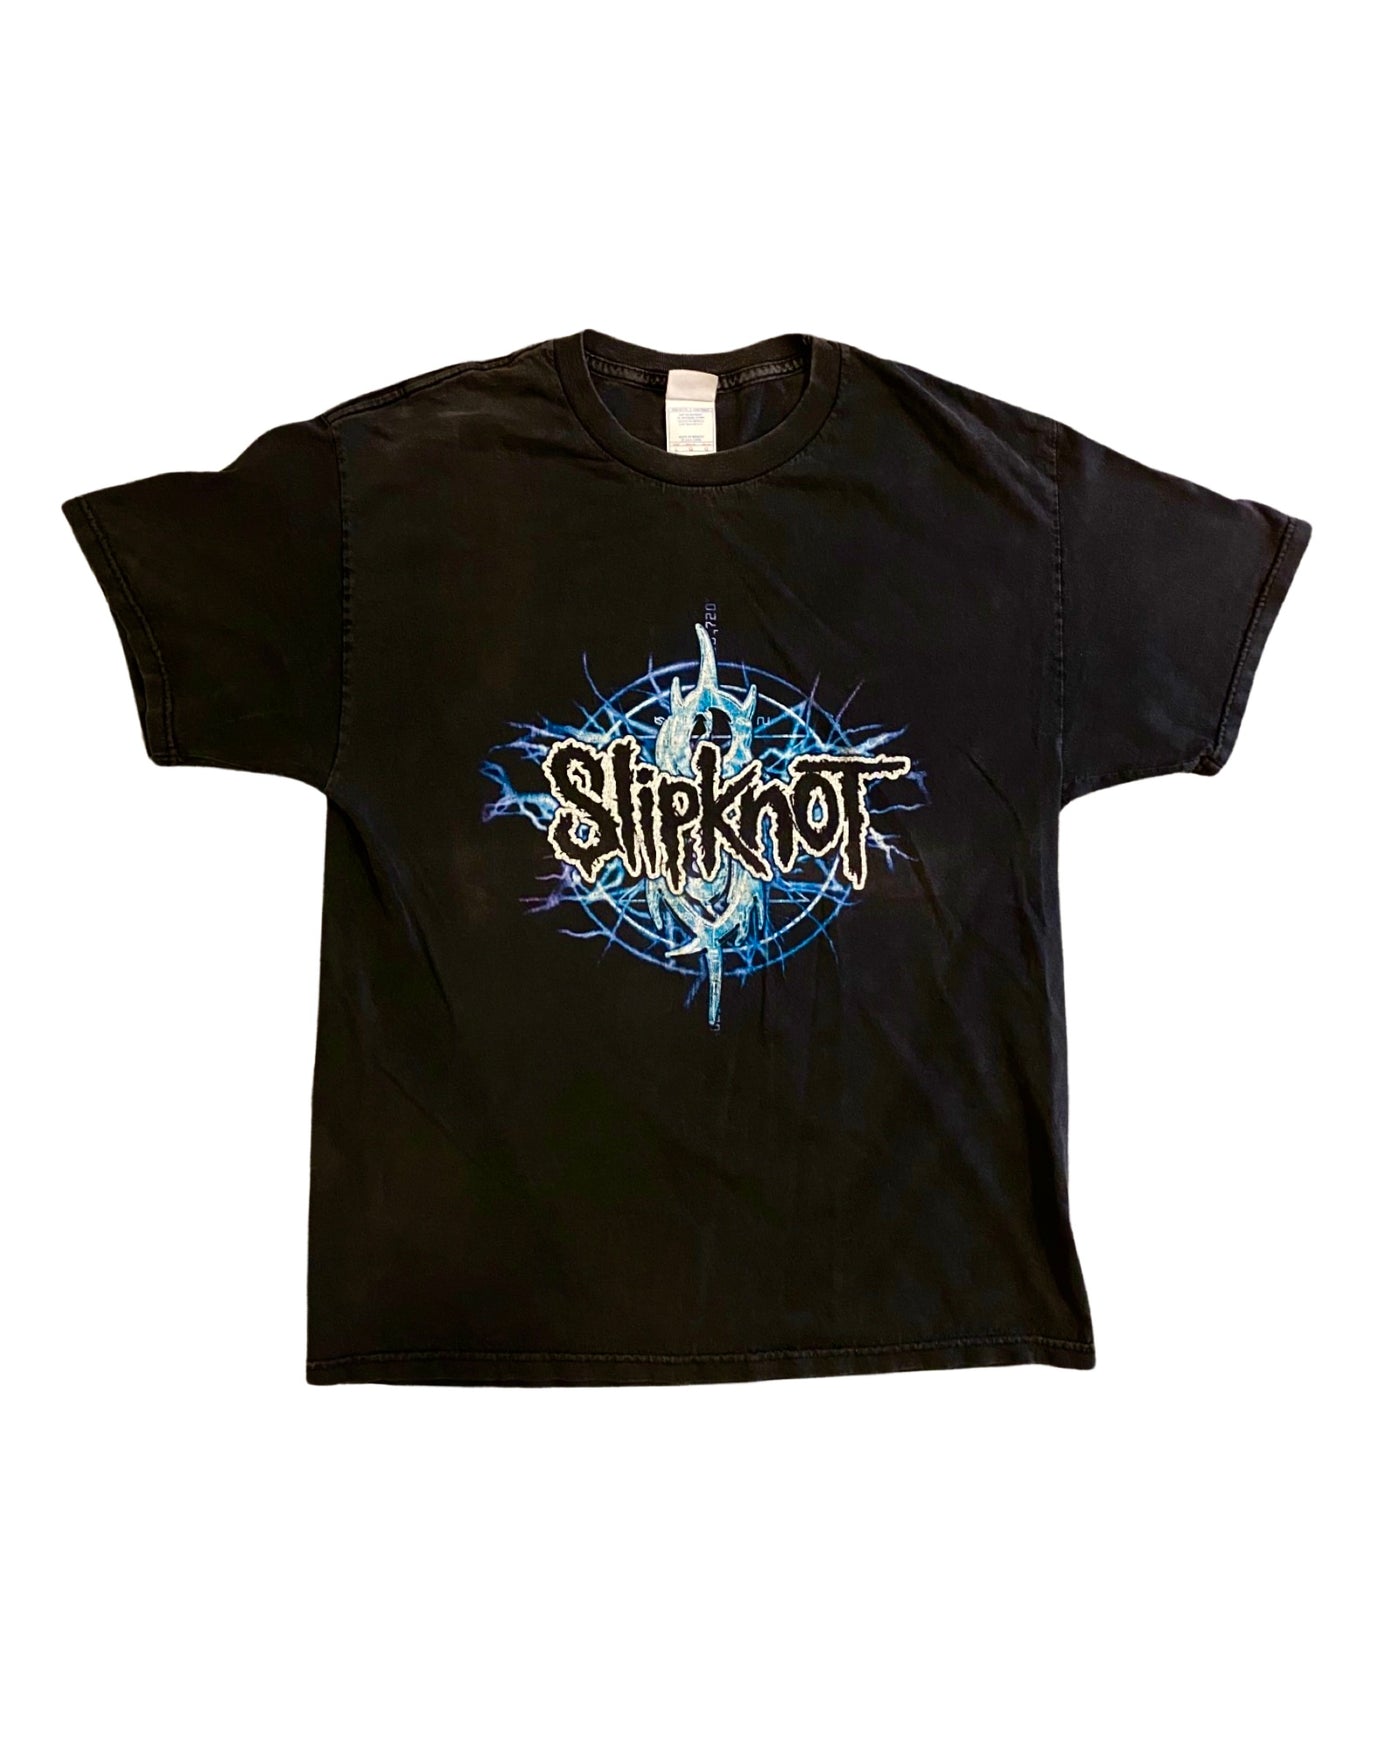 2004 SlipKnot T-Shirt